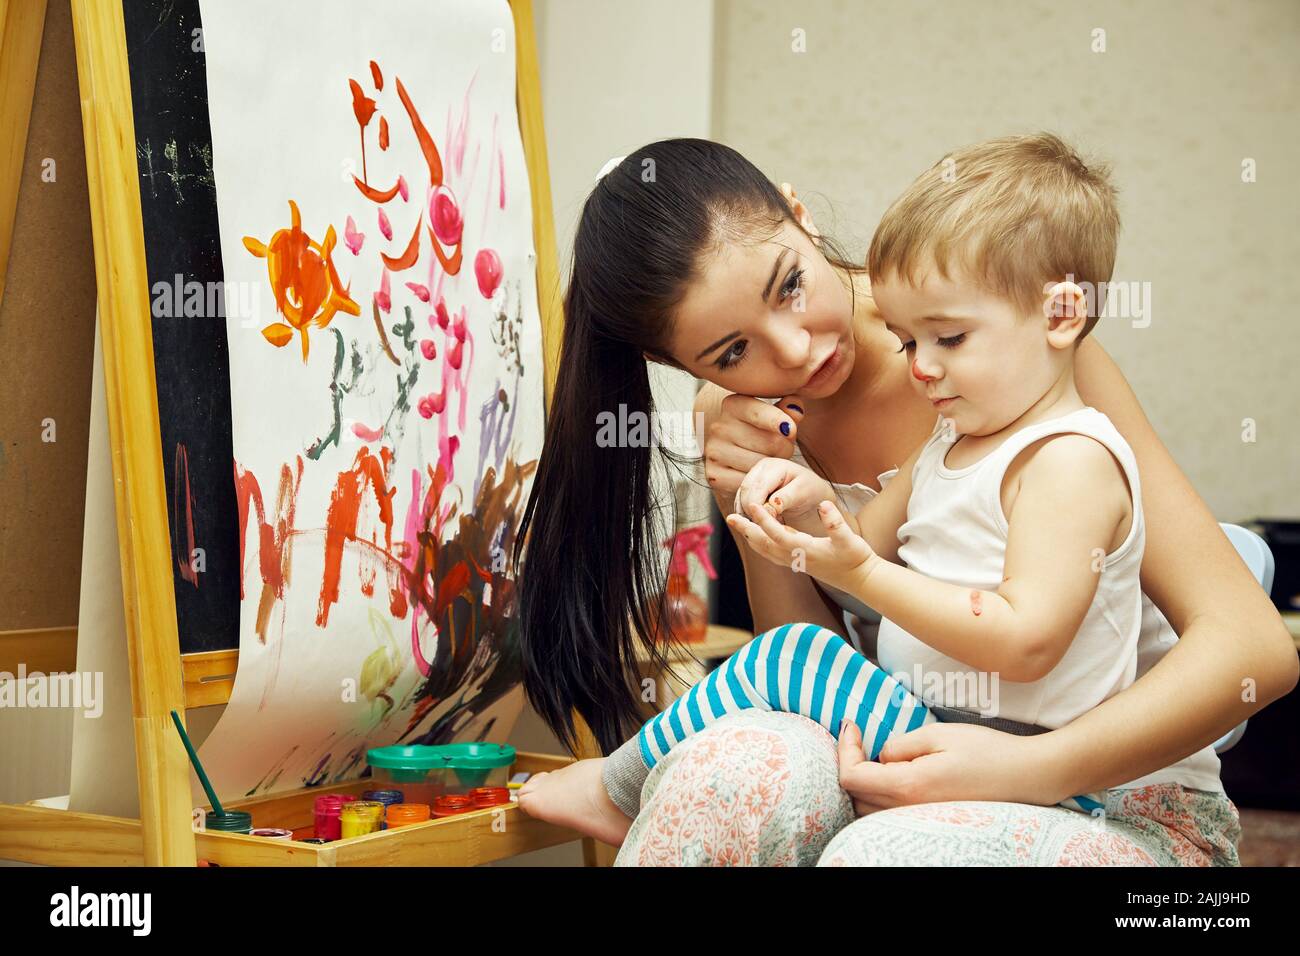 un petit garçon avec une mère peint un pinceau sur un chevalet. peinture de l'enfant. Banque D'Images